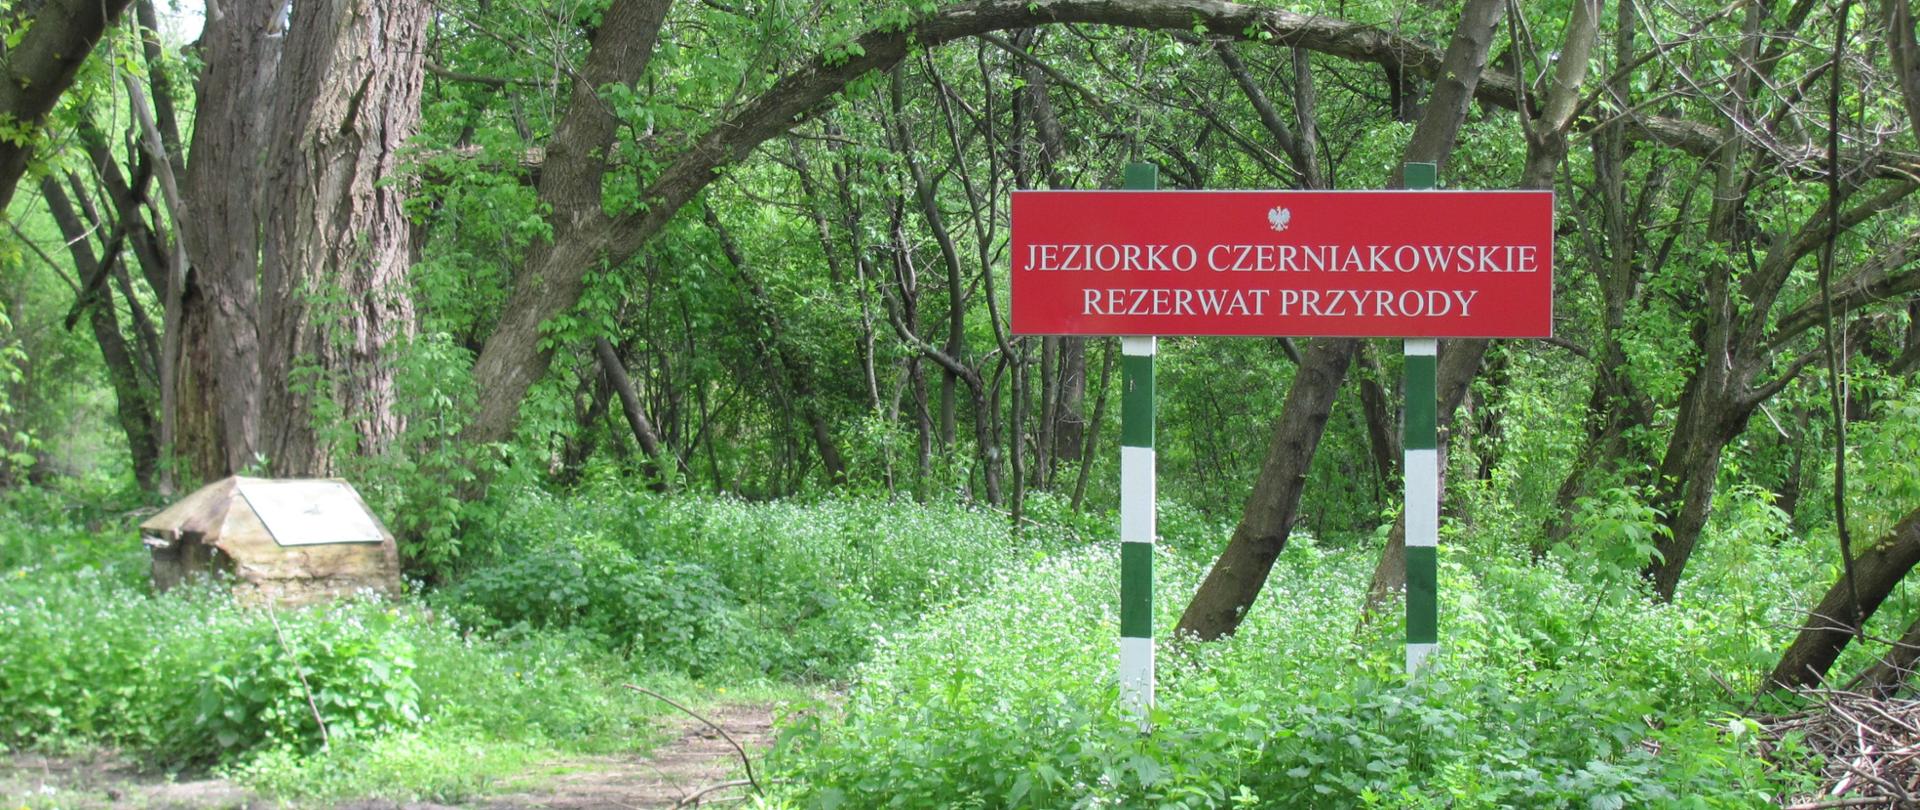 Las, zieleń, przy ścieżce stoi czerwona tablica z napisem "Jeziorko Czerniakowskie Rezerwat Przyrody"